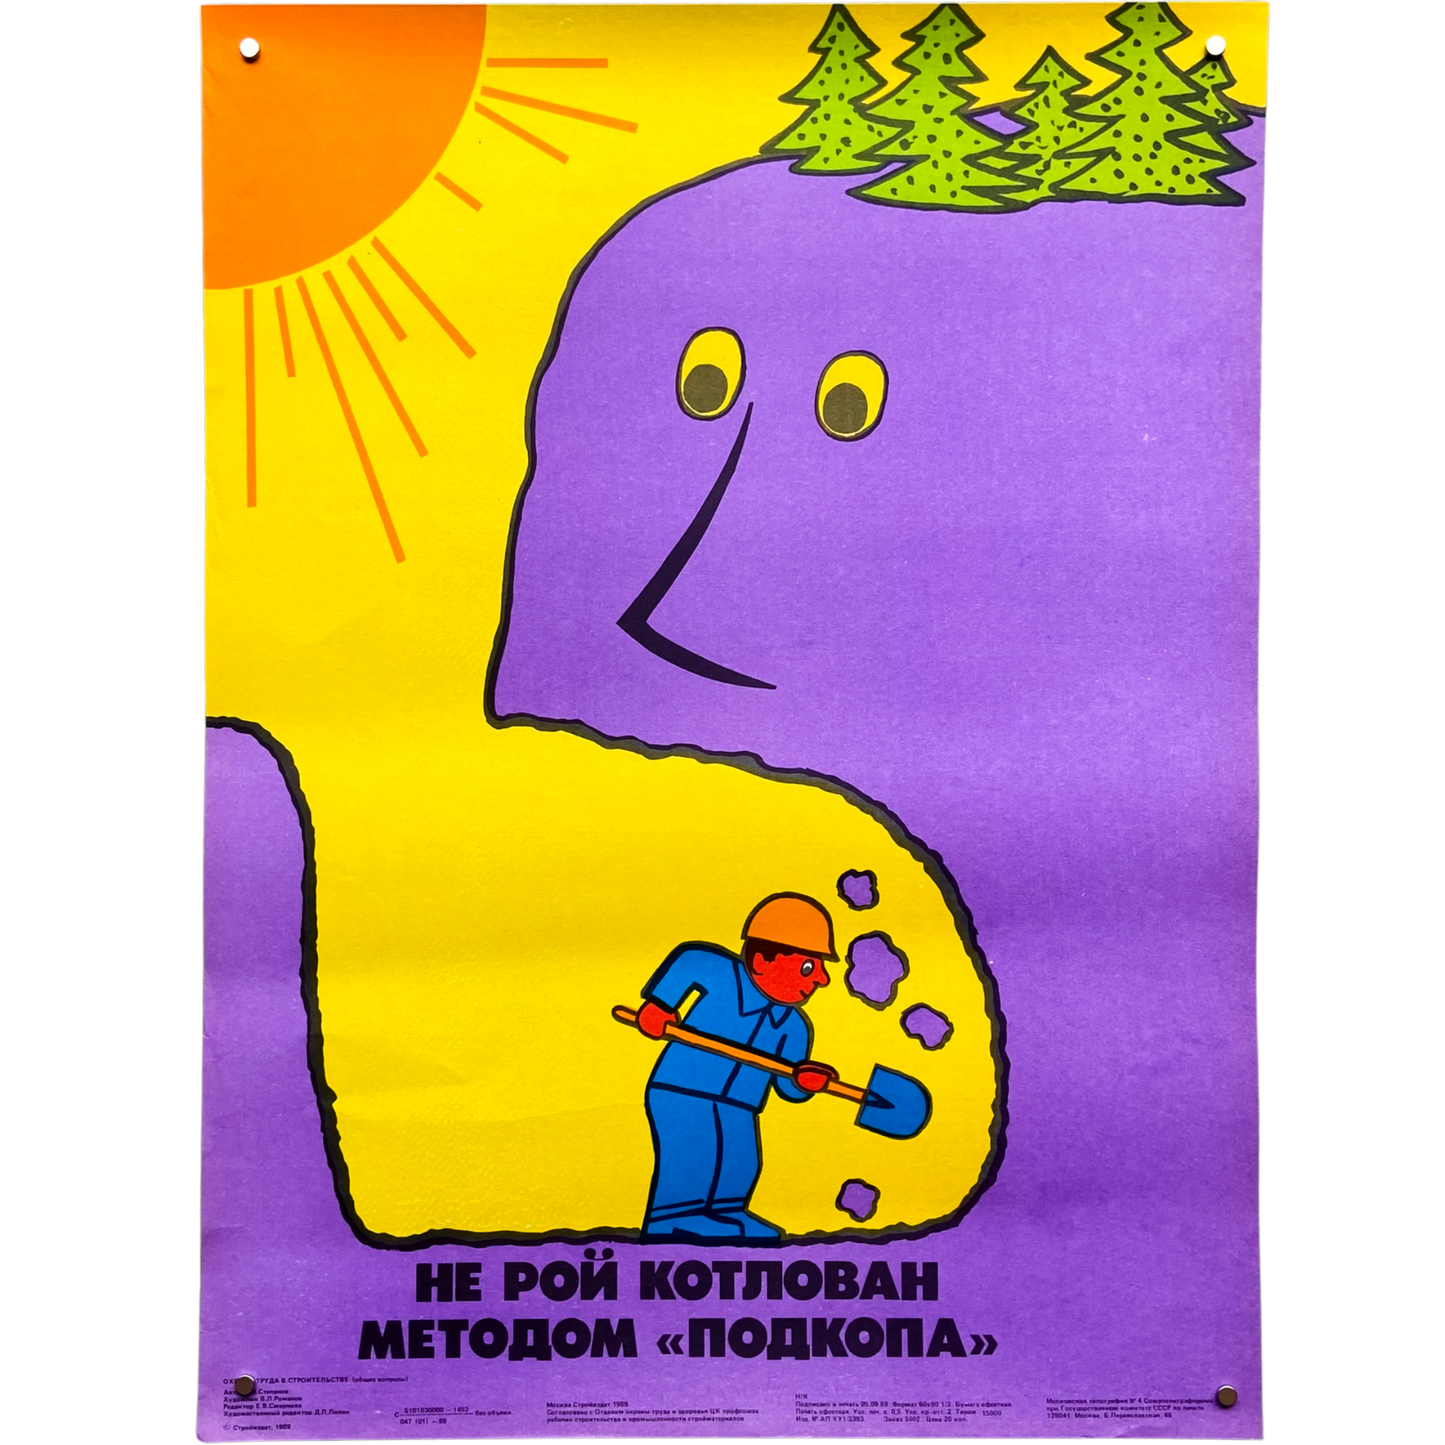 1989 Soviet Work Safety Poster #P1188 - 17" x 23"